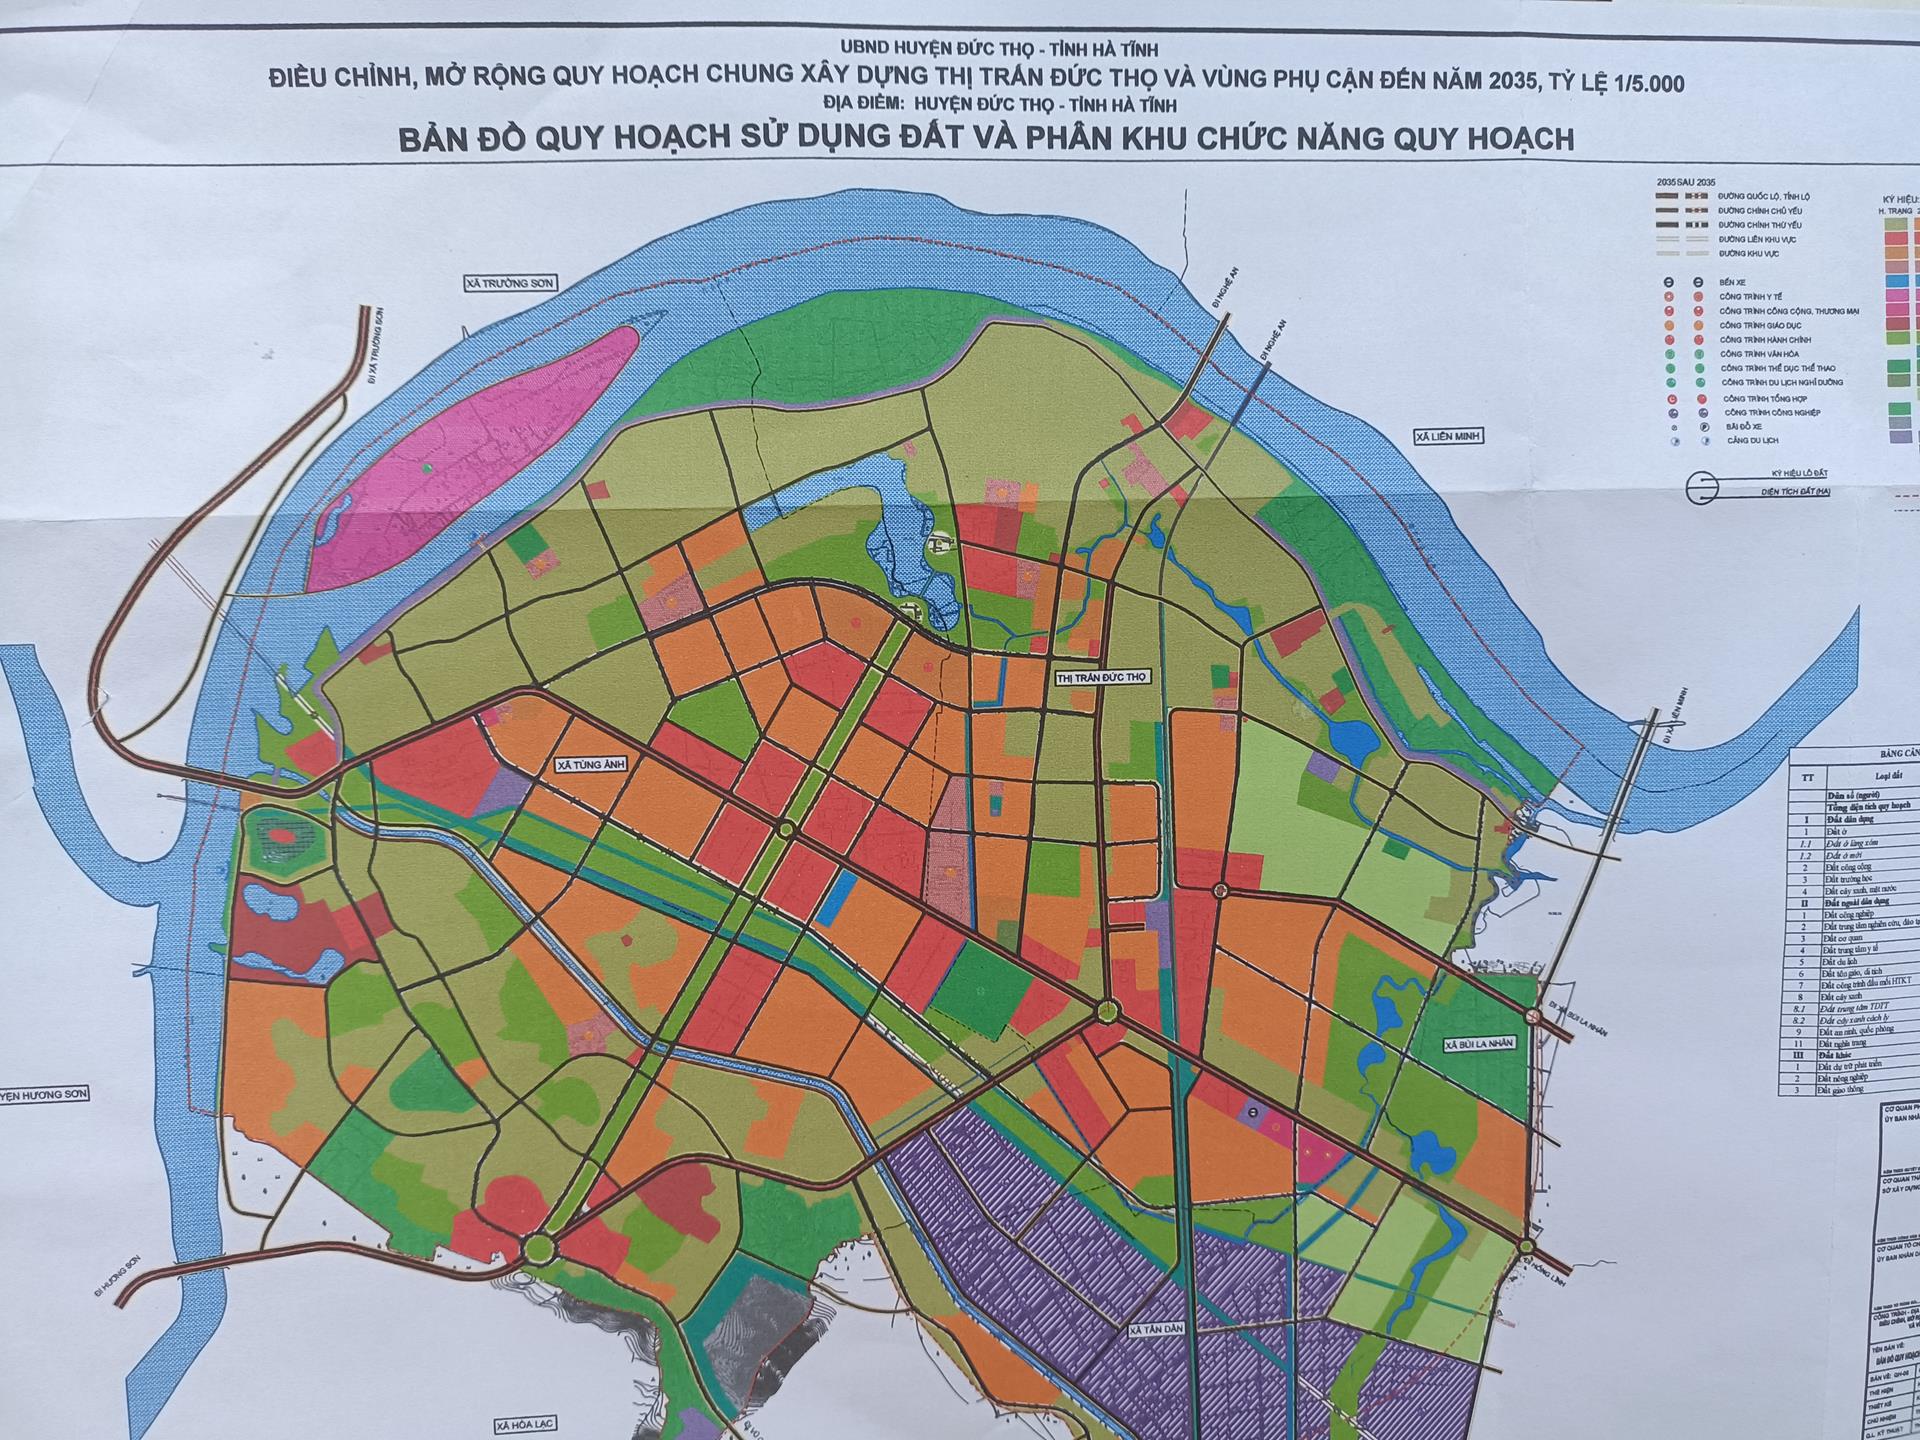 Bản đồ quy hoạch sử dụng đất và các phân khu chức năng thị trấn Đức Thọ